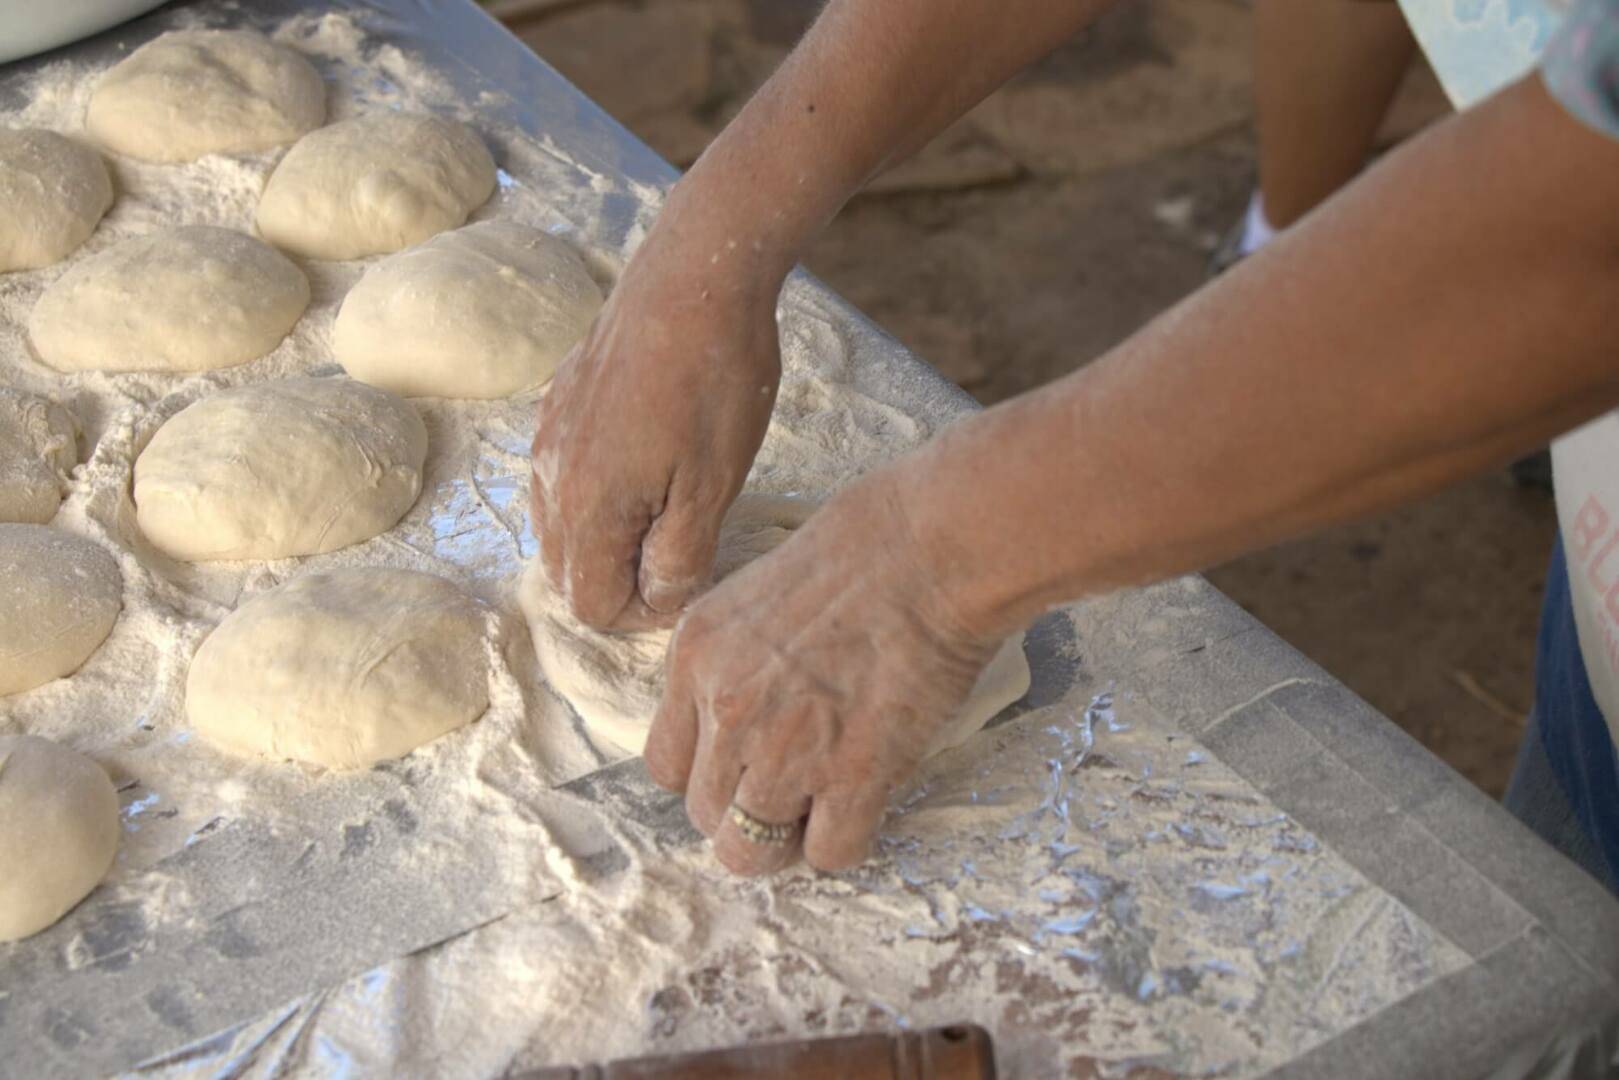 Person kneading balls dough